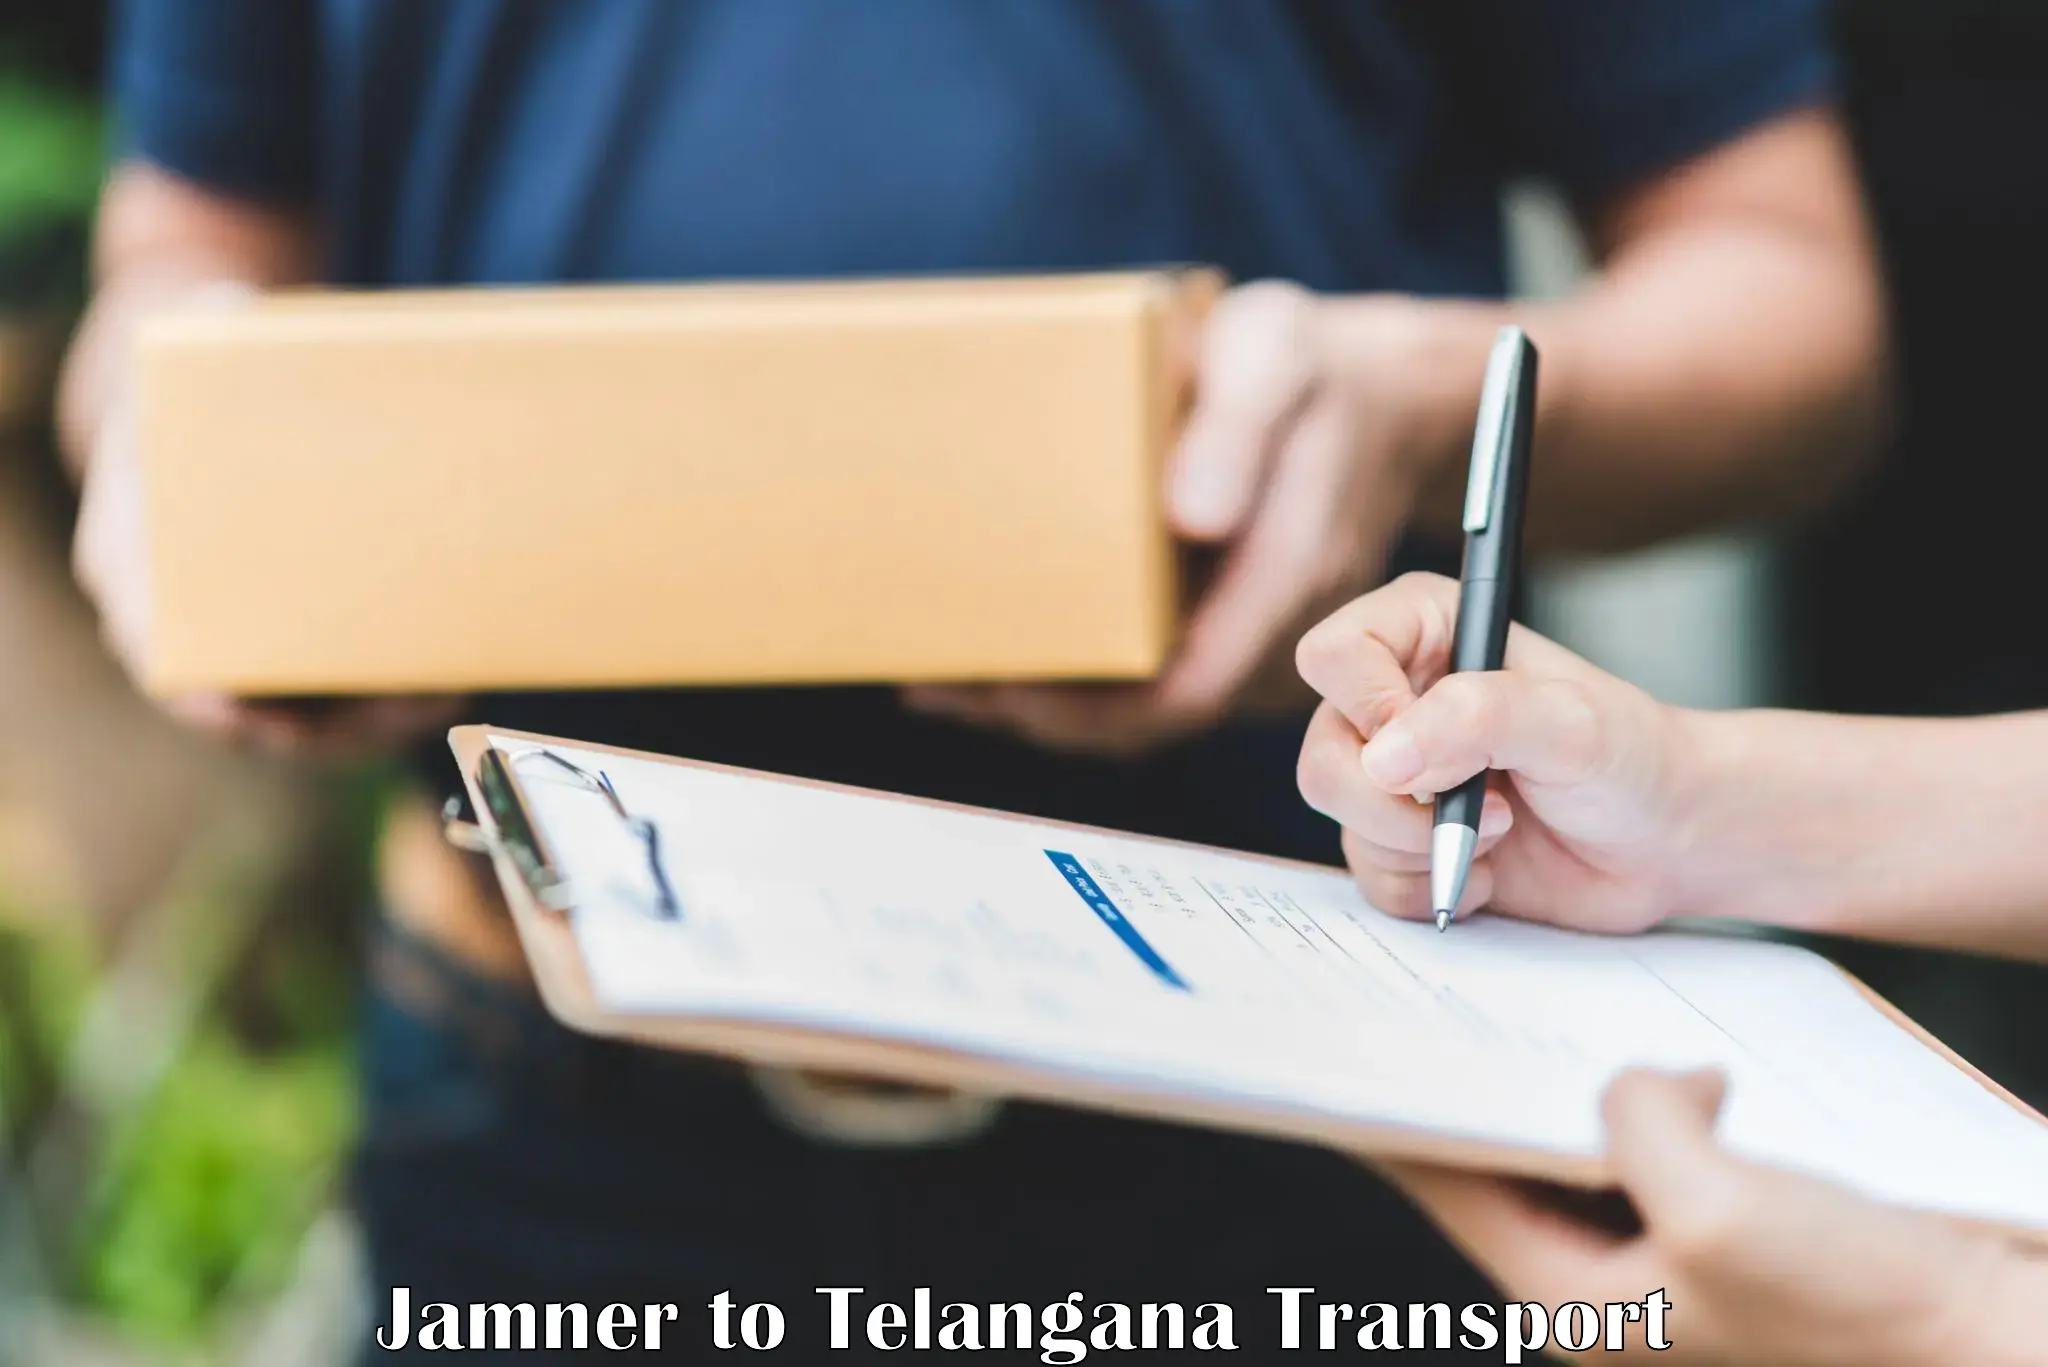 Lorry transport service Jamner to Gangadhara